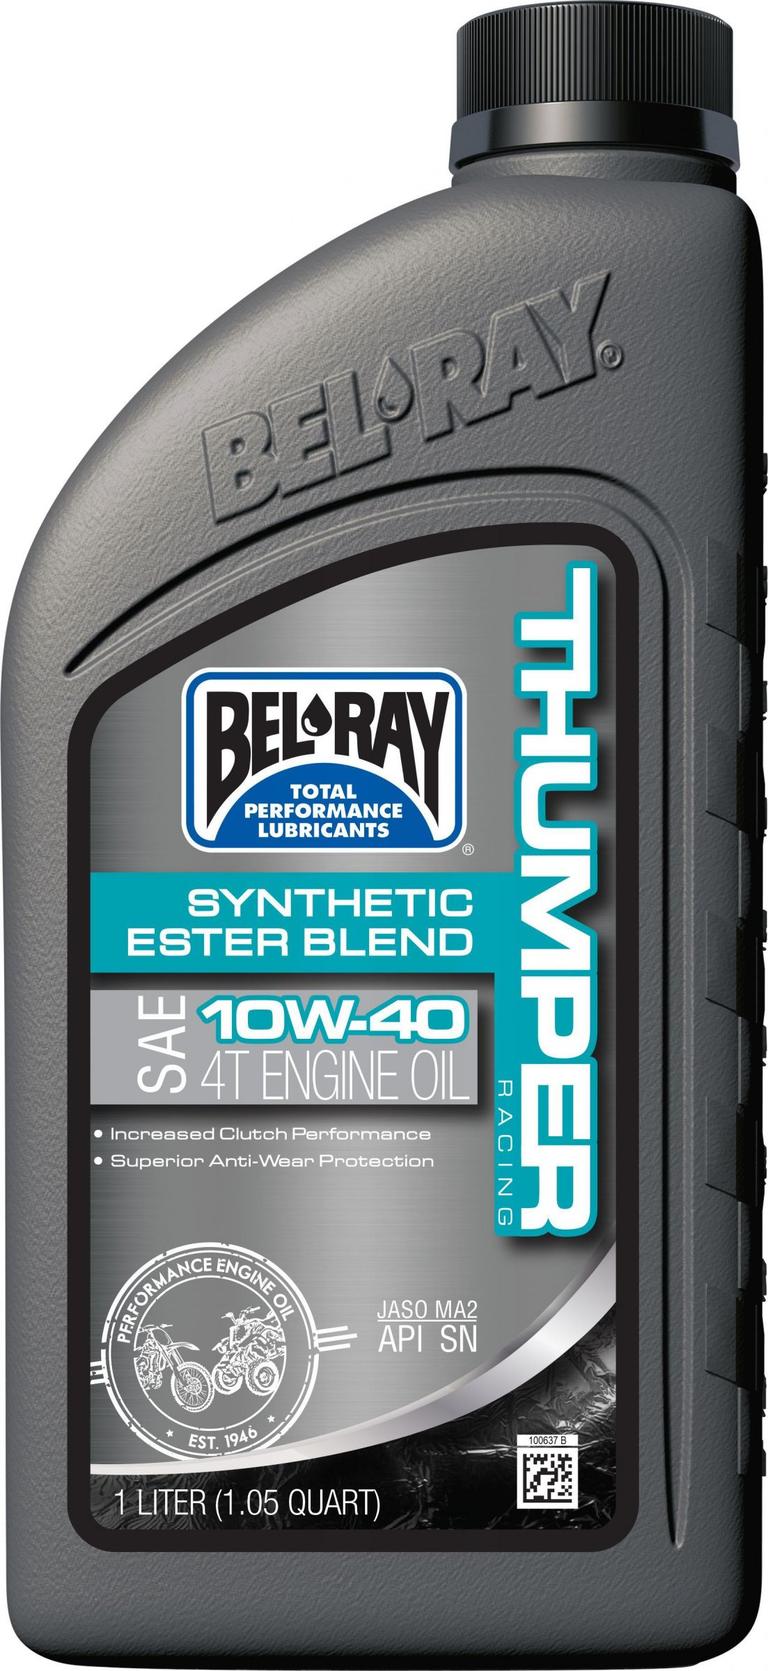 2WXI-BELRAY-99520-B1LW Thumper Synthetic Blend 4T Oil - 10W-40 - 1L